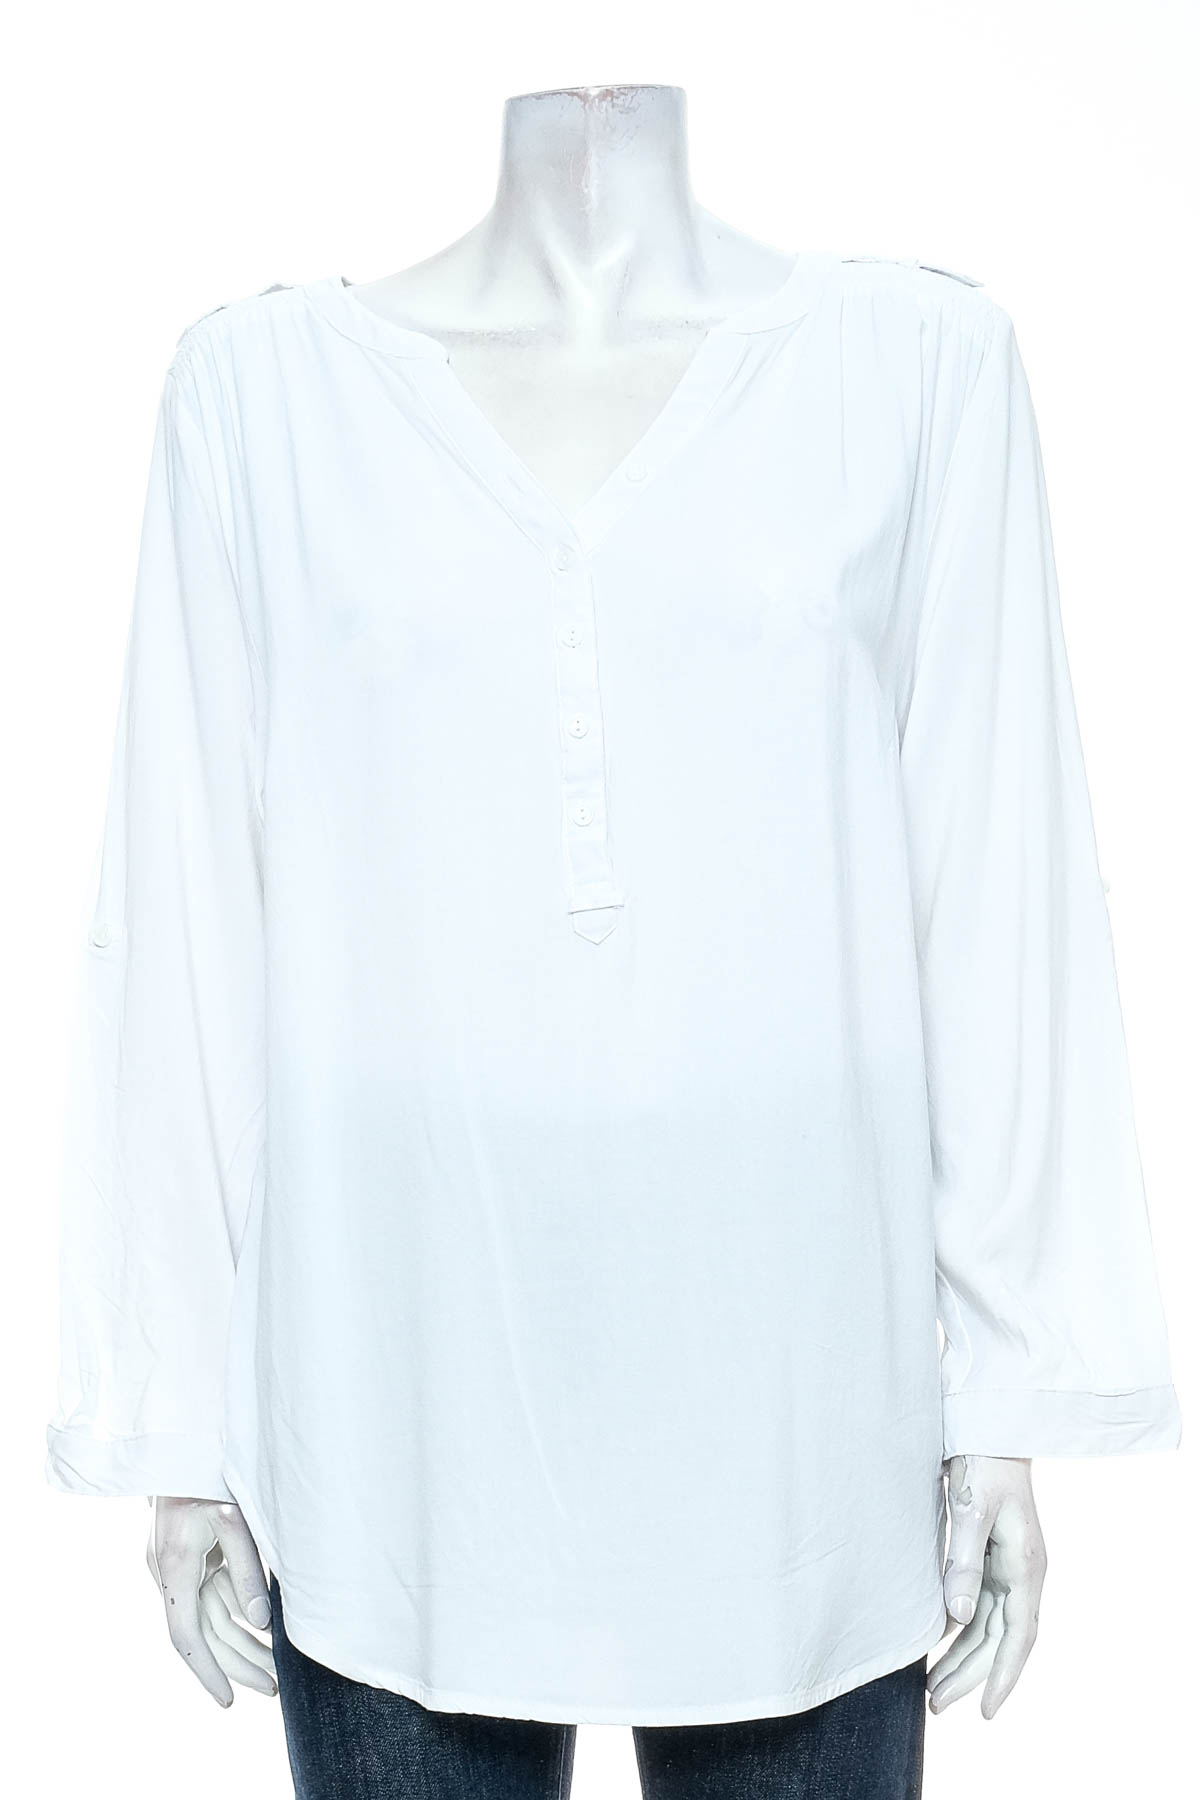 Γυναικείо πουκάμισο - Bpc Bonprix Collection - 0